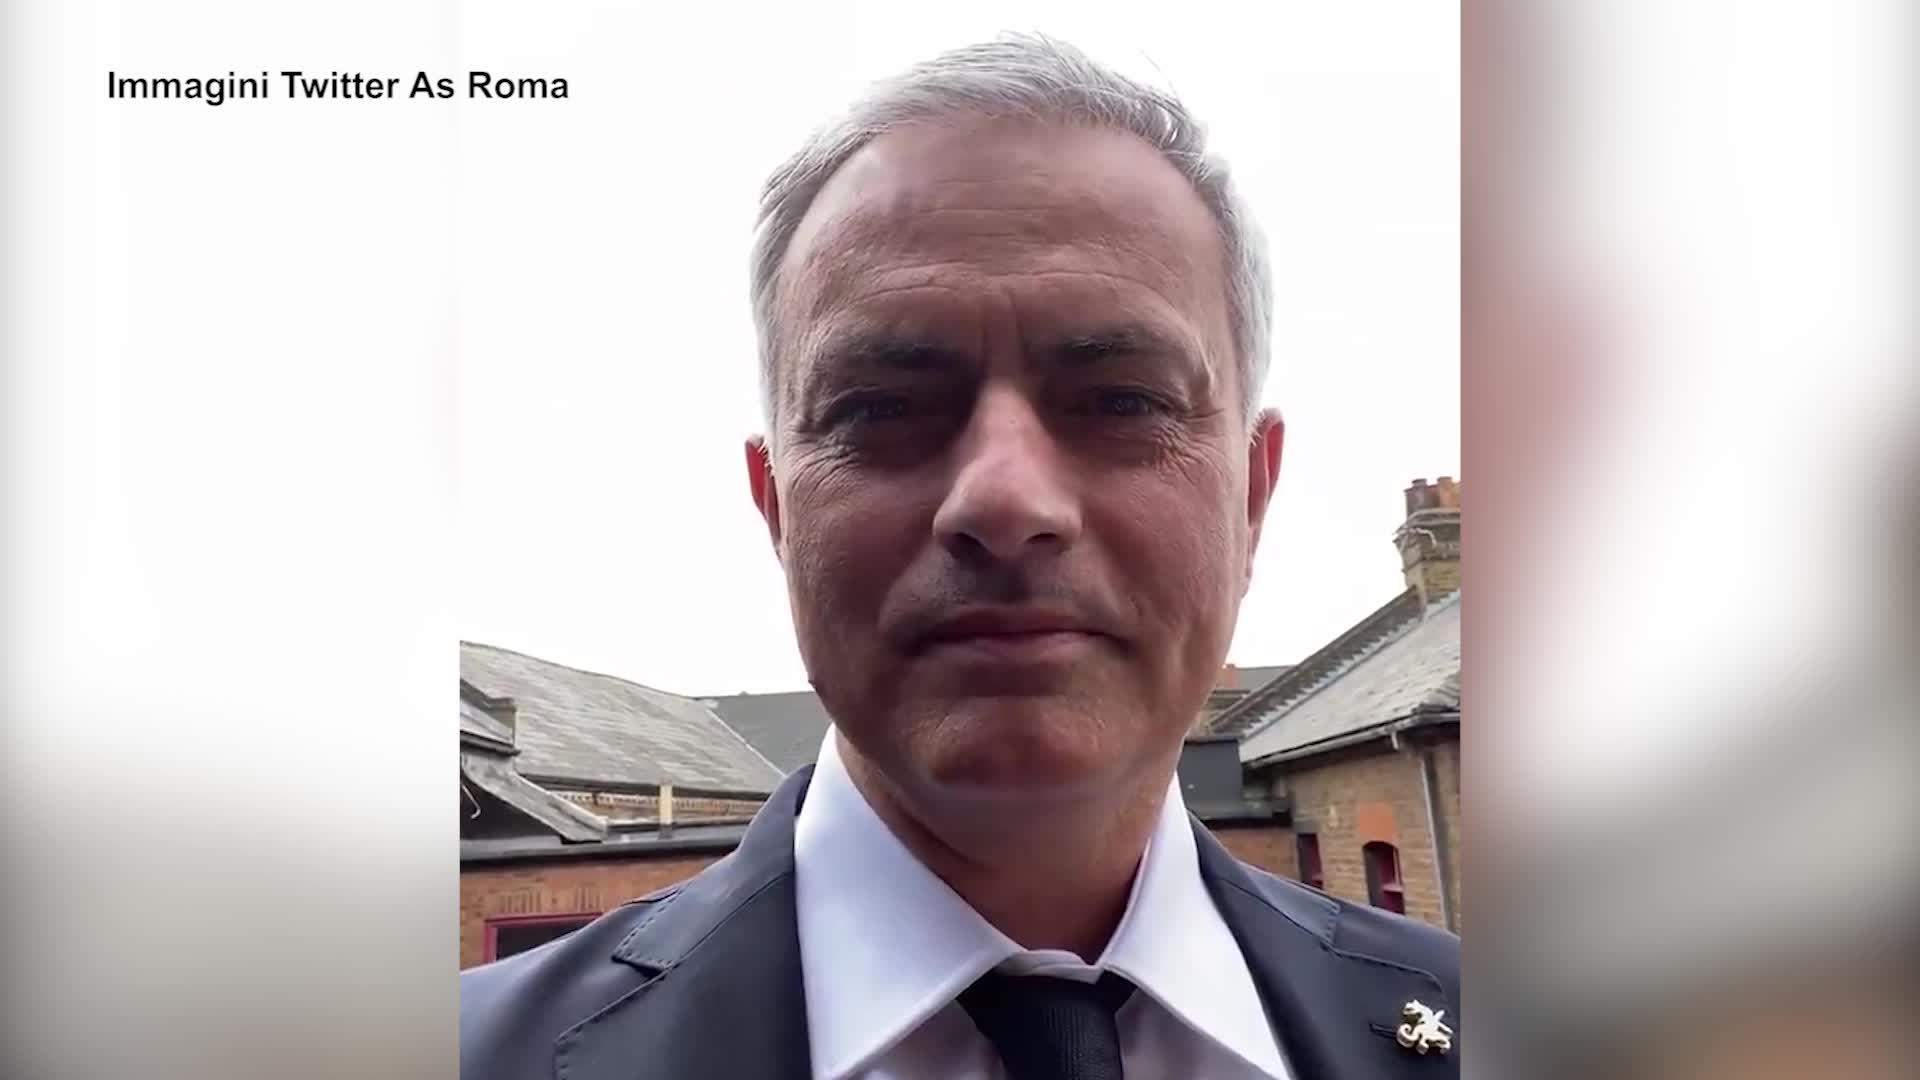 Roma, Mourinho annuncia lo sbarco: "Sto arrivando"